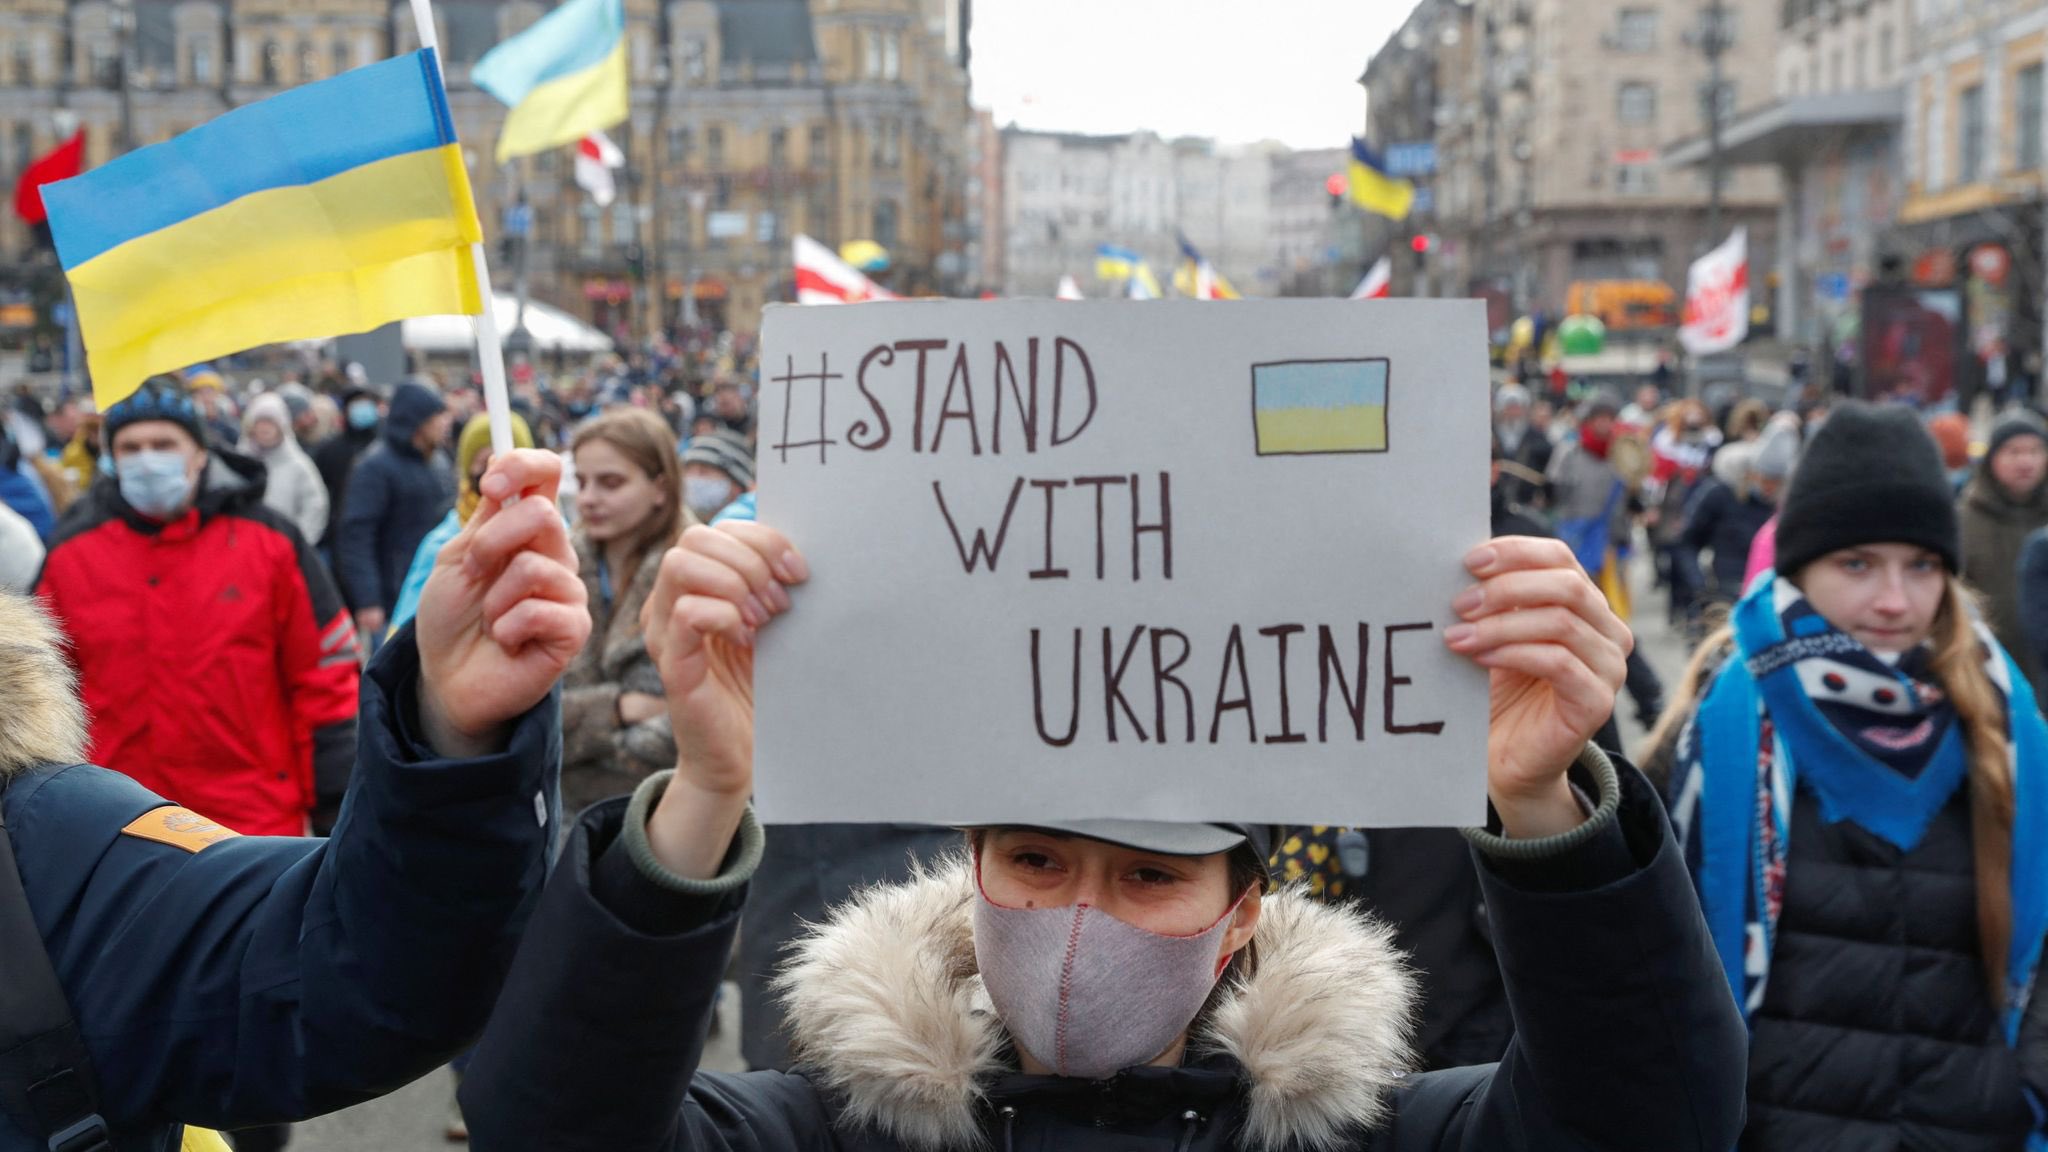 Operaterji omogočili brezplačne klice v Ukrajino